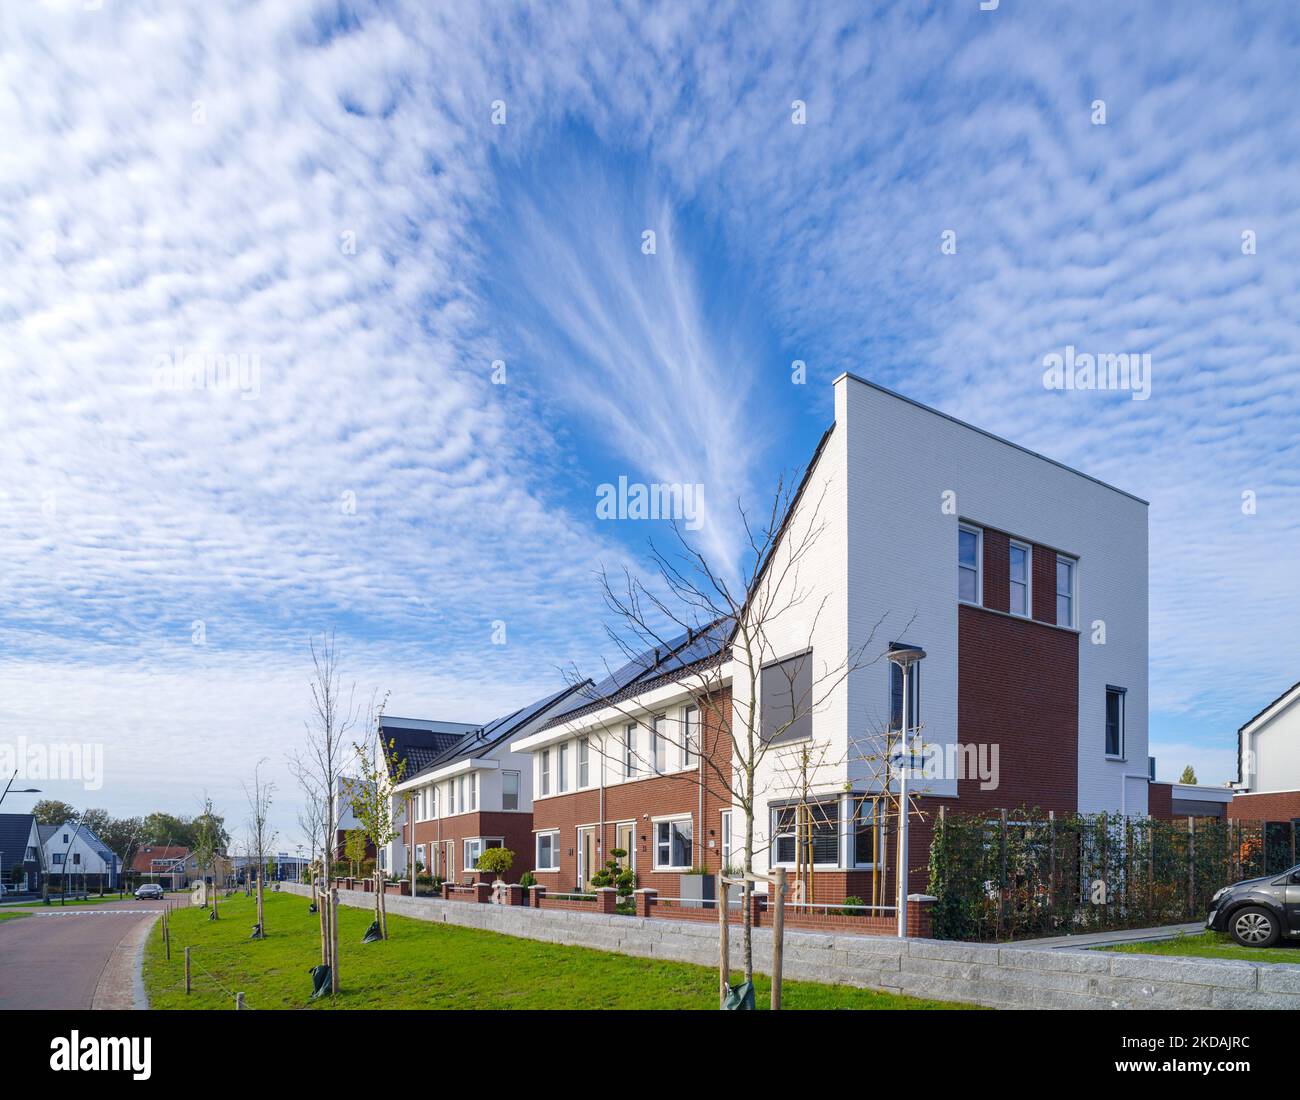 Zona residencial de nueva construcción en los Países Bajos con algunas hermosas nubes por encima Foto de stock